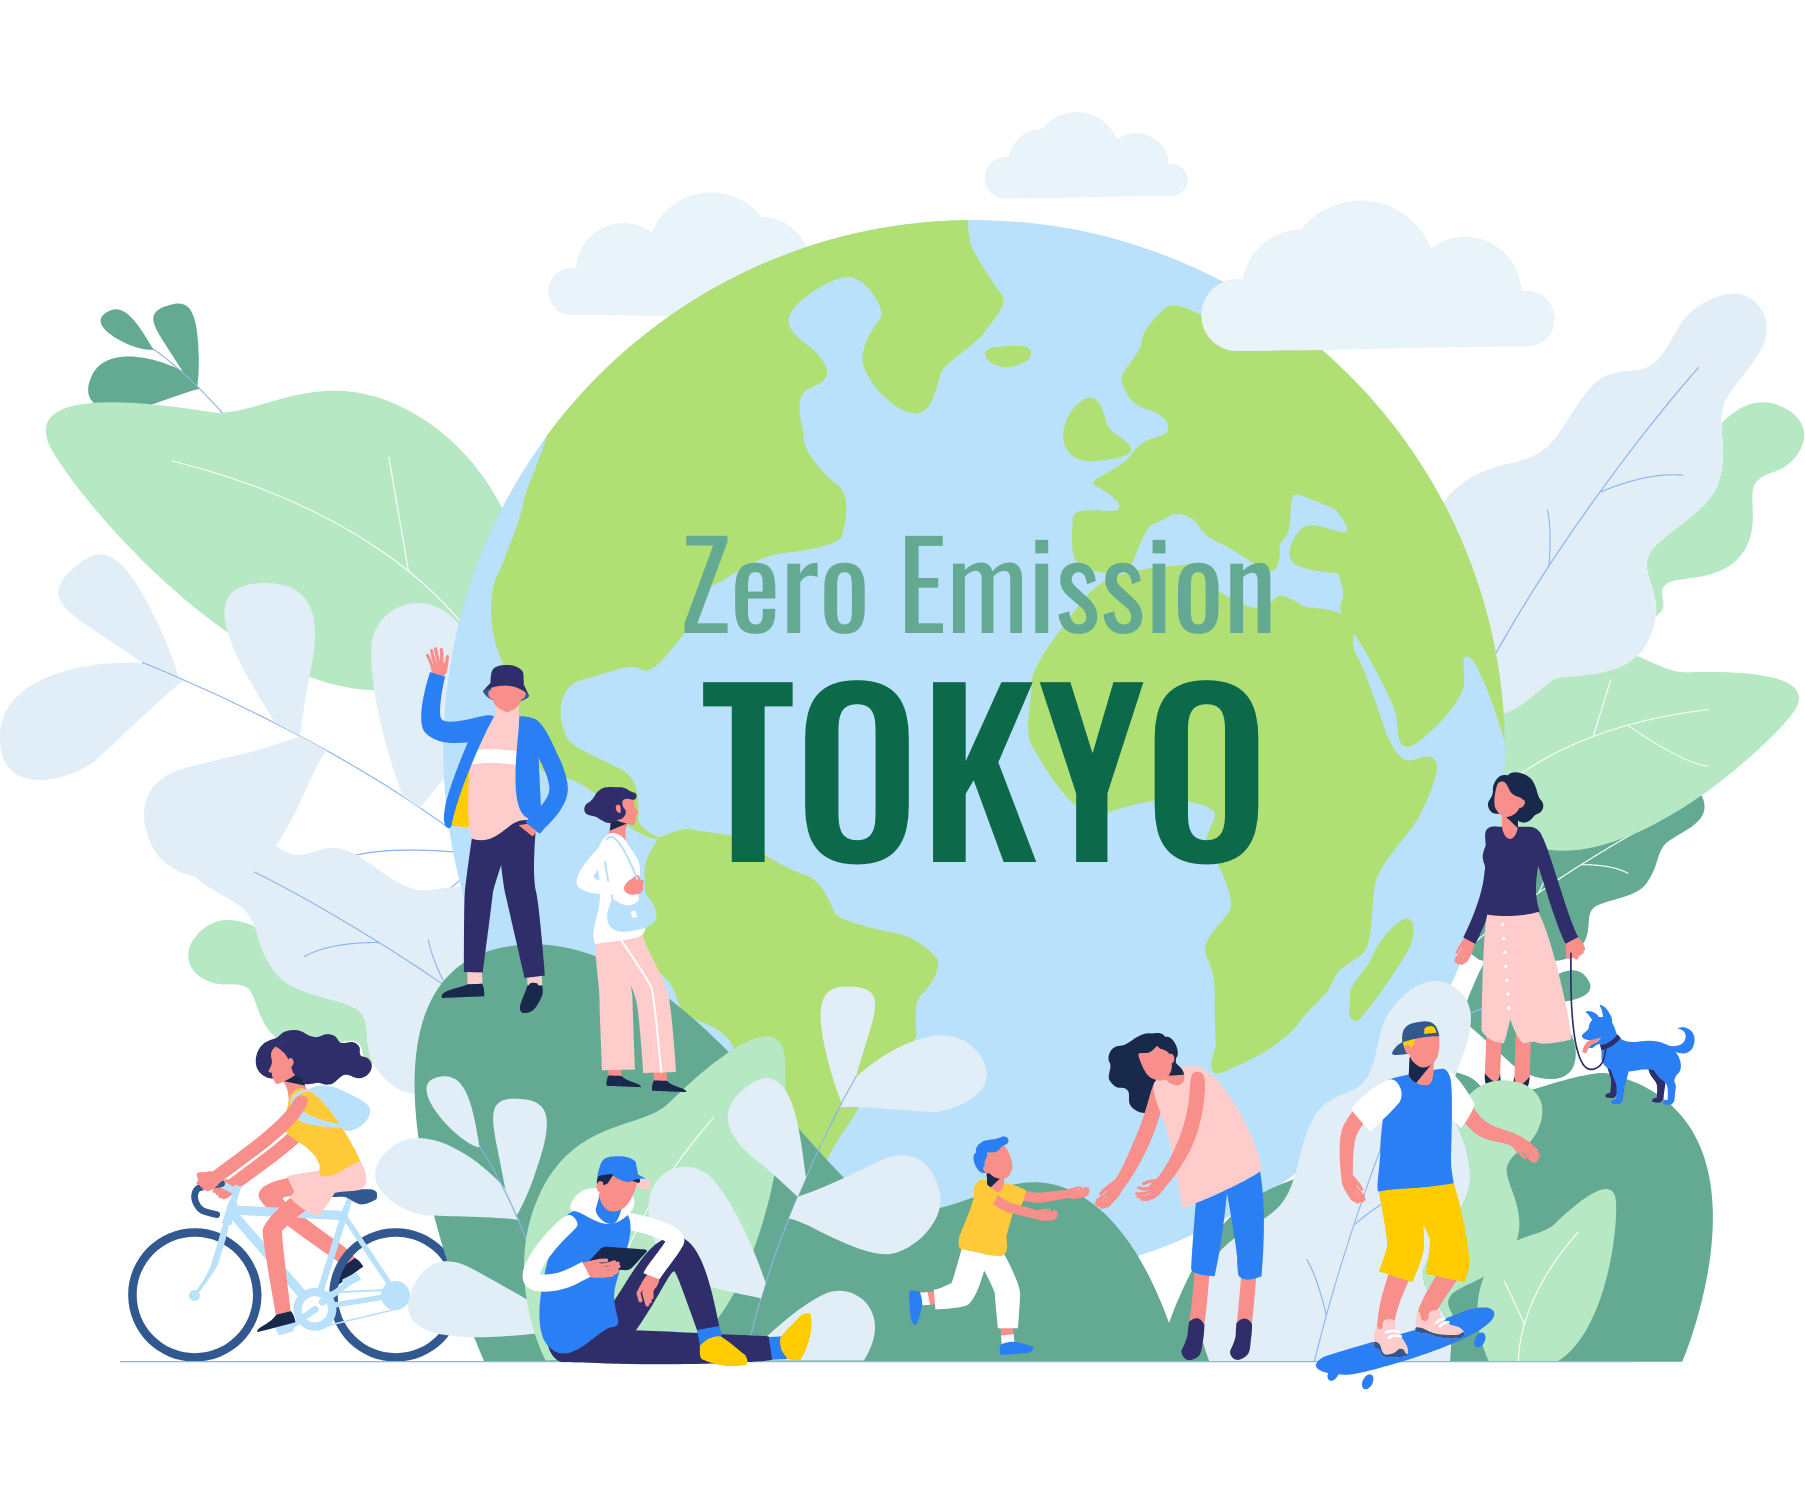 Zero Emission TOKYO